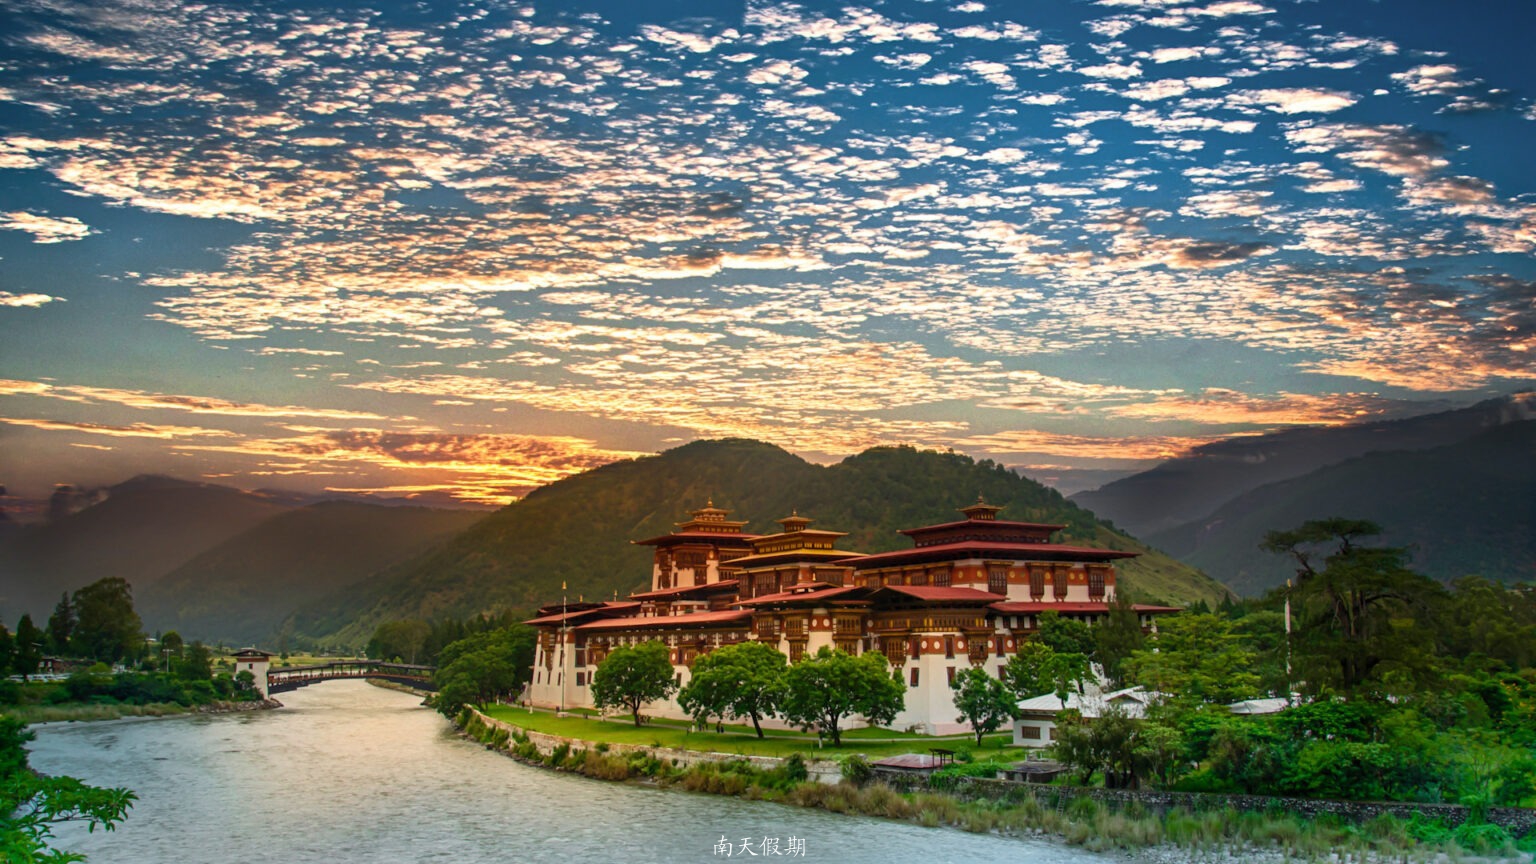 Bhutan-Punakha-Dzong-Sunset-1326288165-Website-1920x1080-fill-gravityauto-1536x864